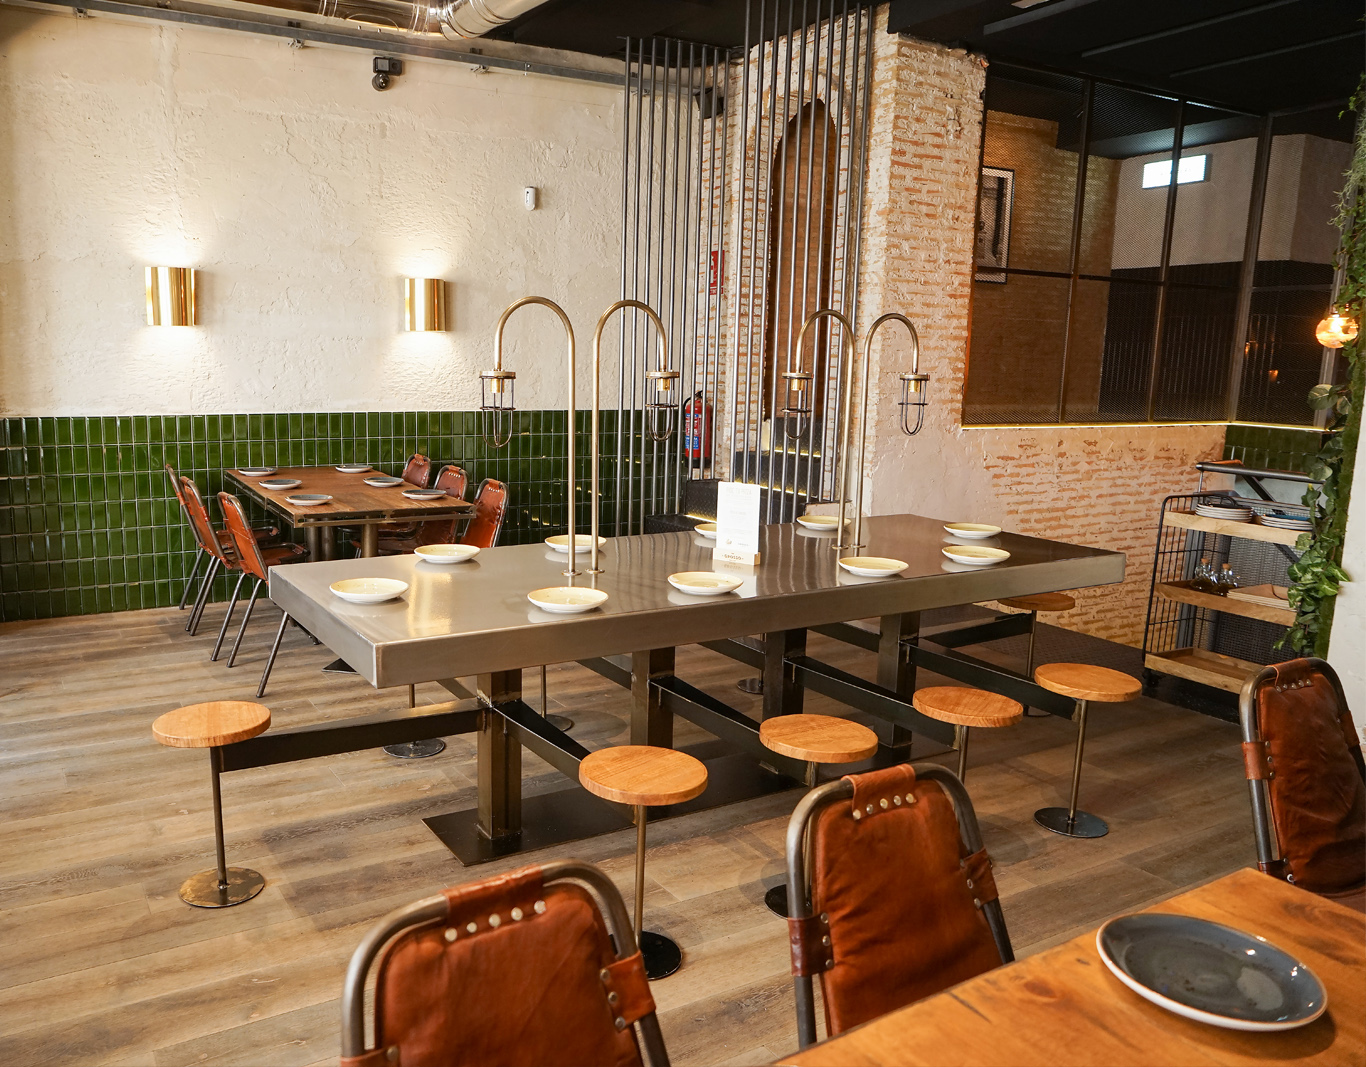 Foto de comedor, paredes alicatadas a media altura, suelo en tarima, mesa metálica y bancos de madera